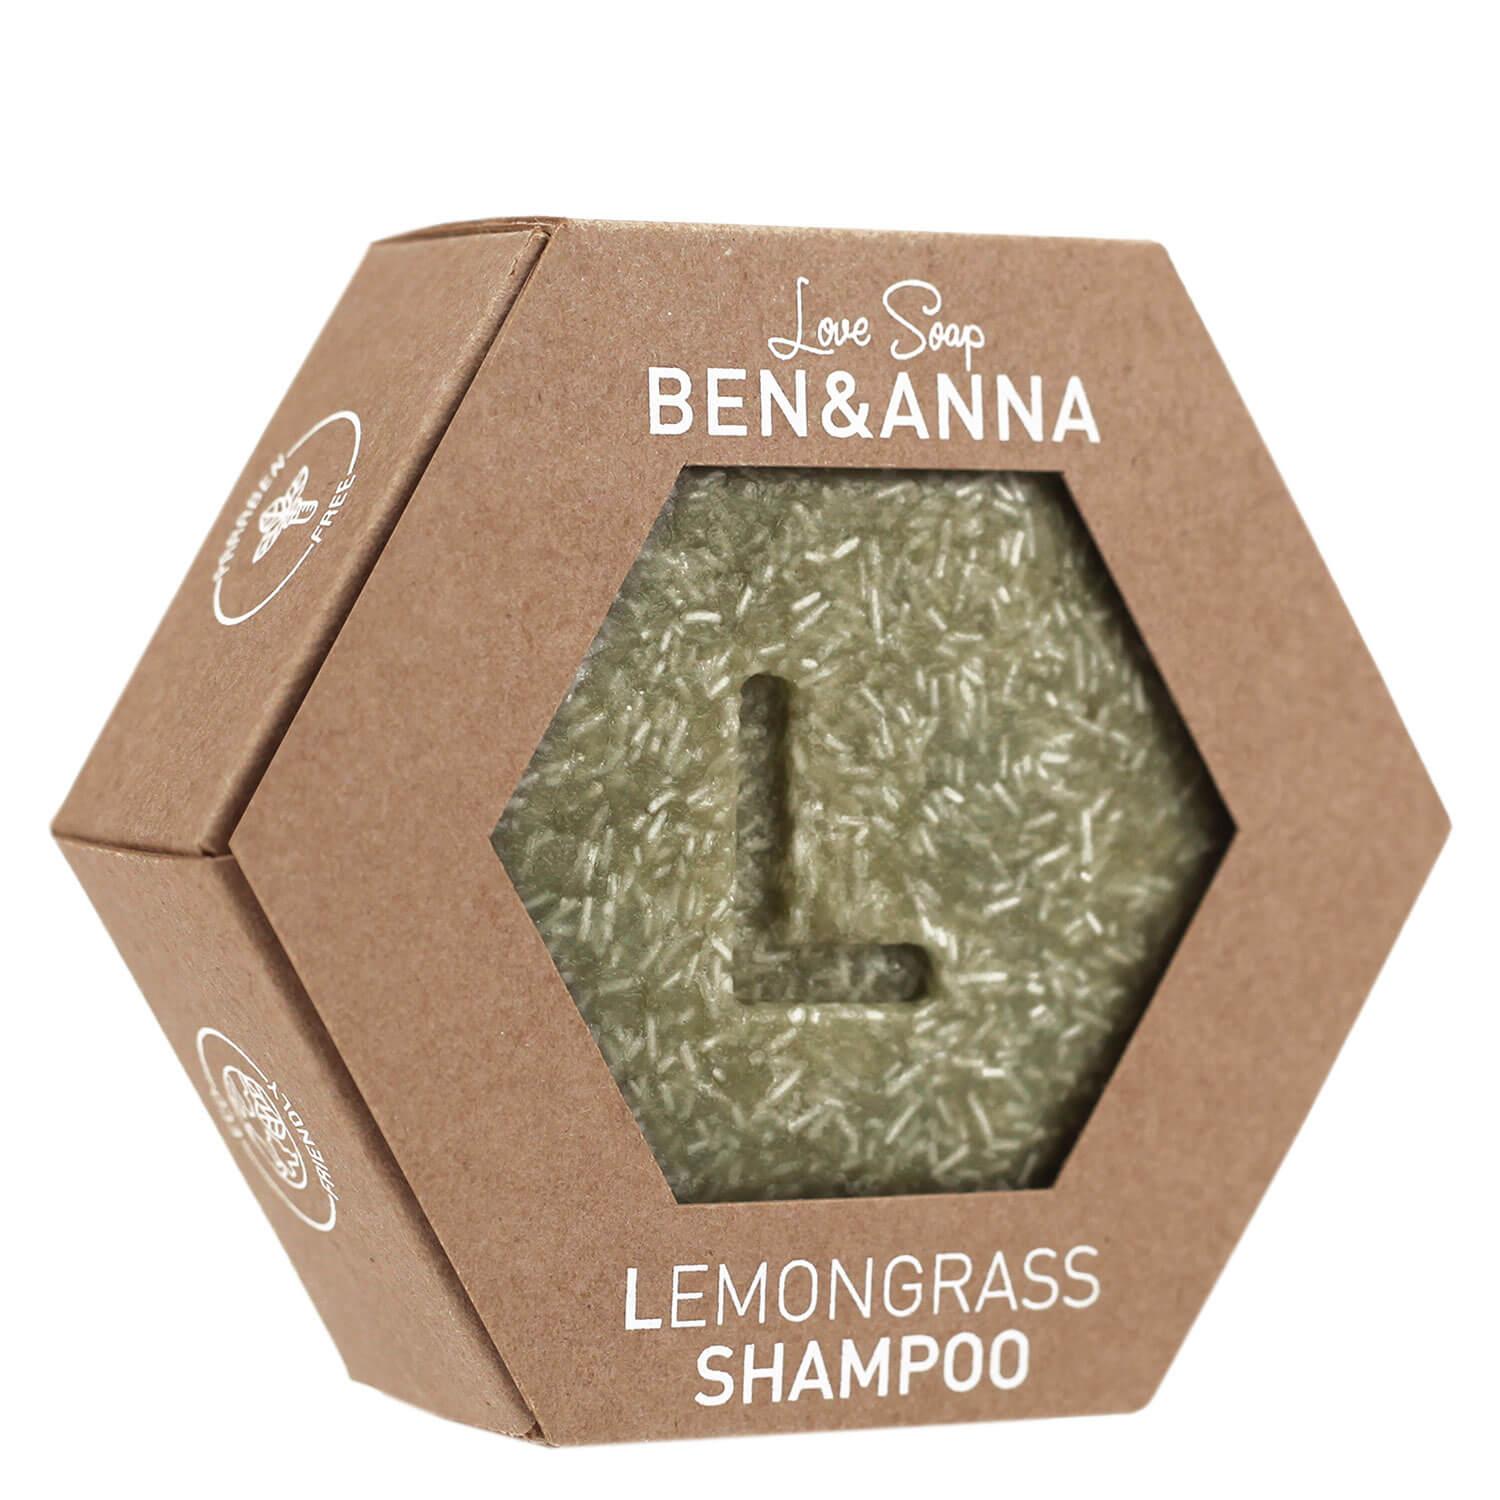 BEN&ANNA - Lemongrass Shampoo